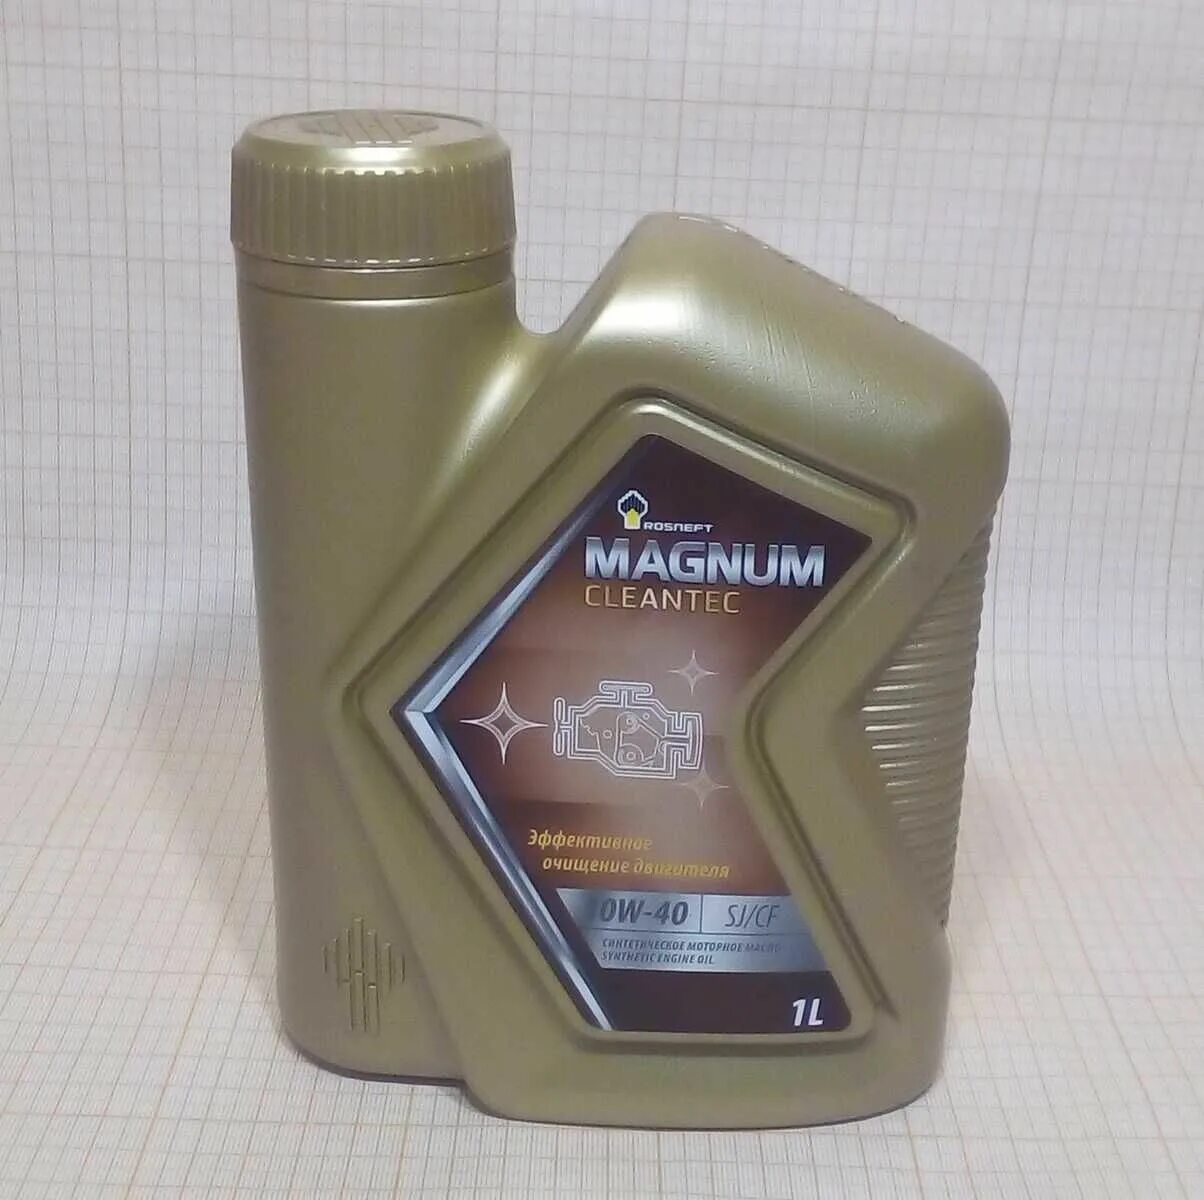 Роснефть Магнум 5w30. Magnum Maxtec 5w-30. Масло Роснефть Магнум 5w30. Роснефть Магнум 10w 40 полусинтетика. Масло роснефть магнум полусинтетика